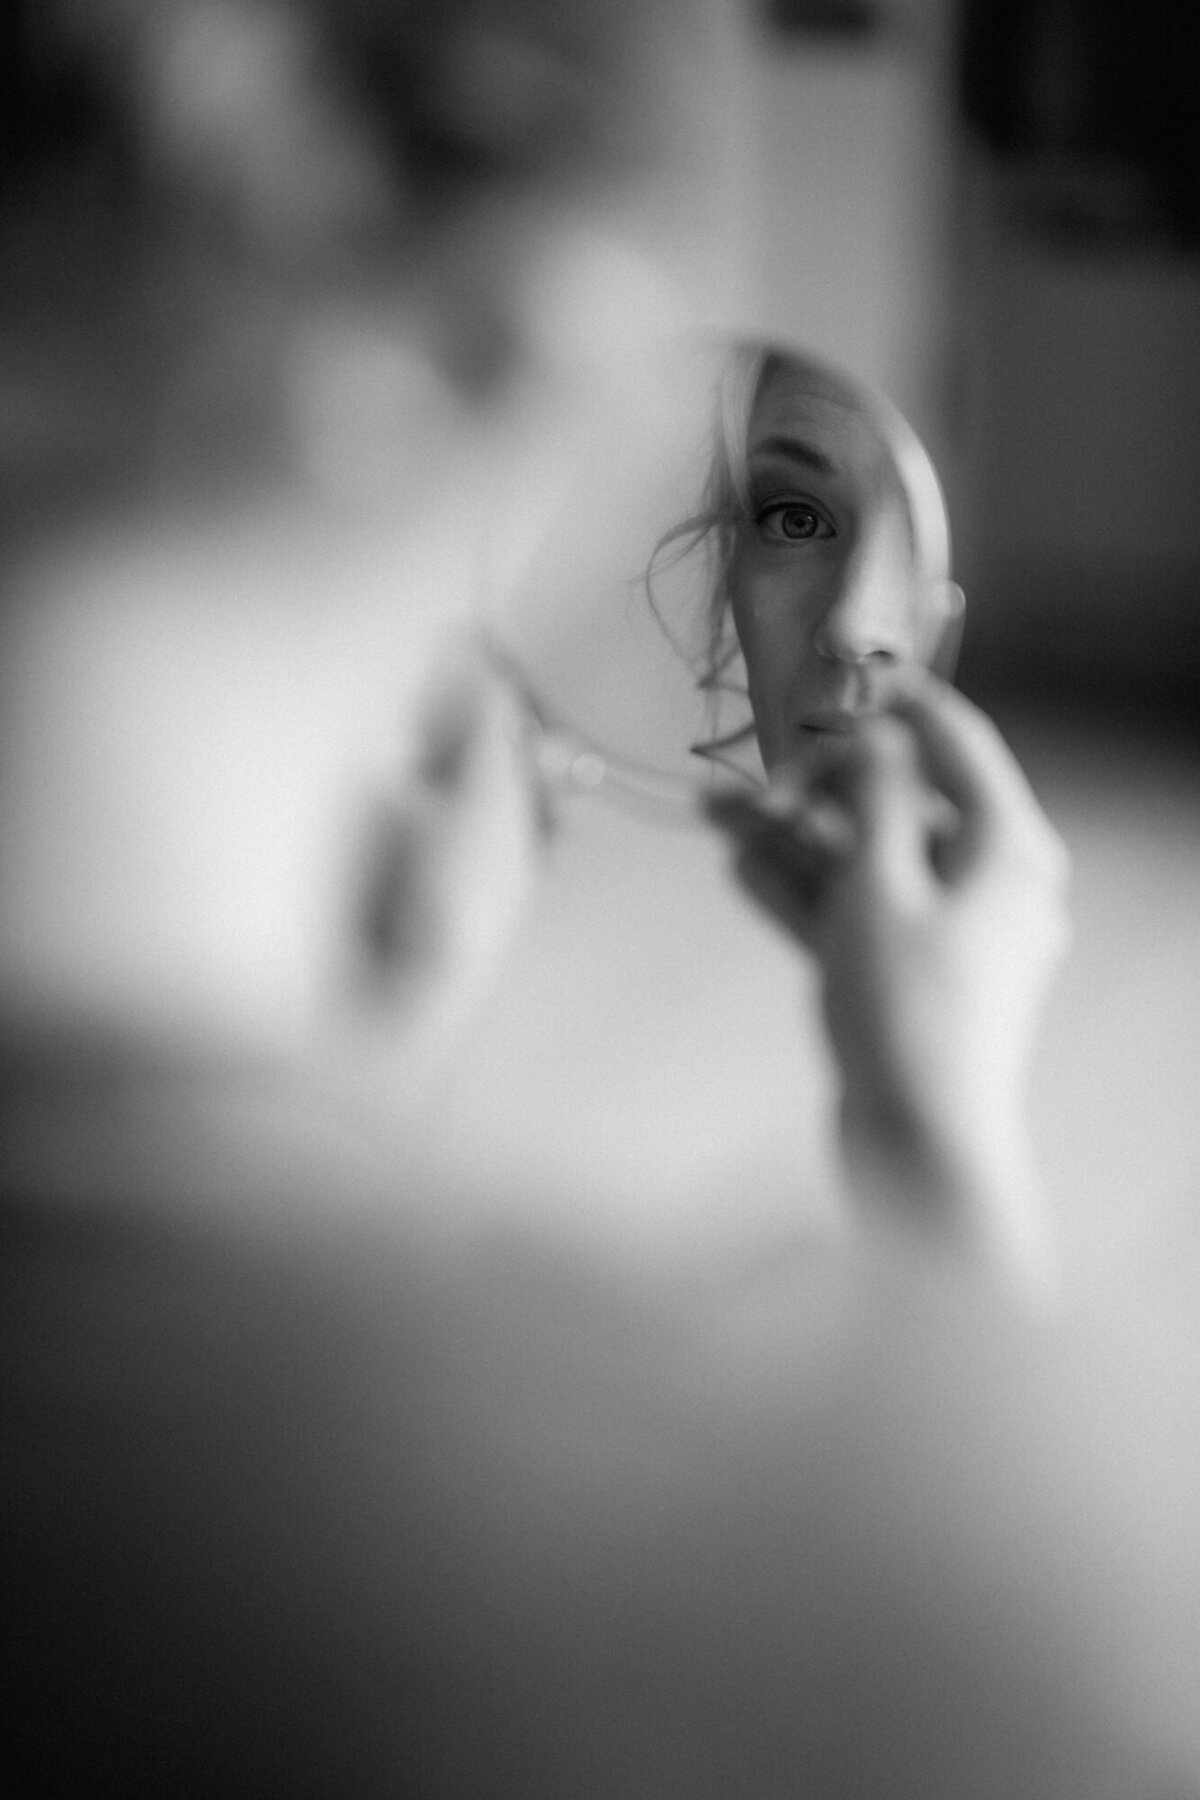 Die Braut betrachtet sich in einem kleinen runden Spiegel. Nur ihre Spiegelung ist deutlich sichtbar.